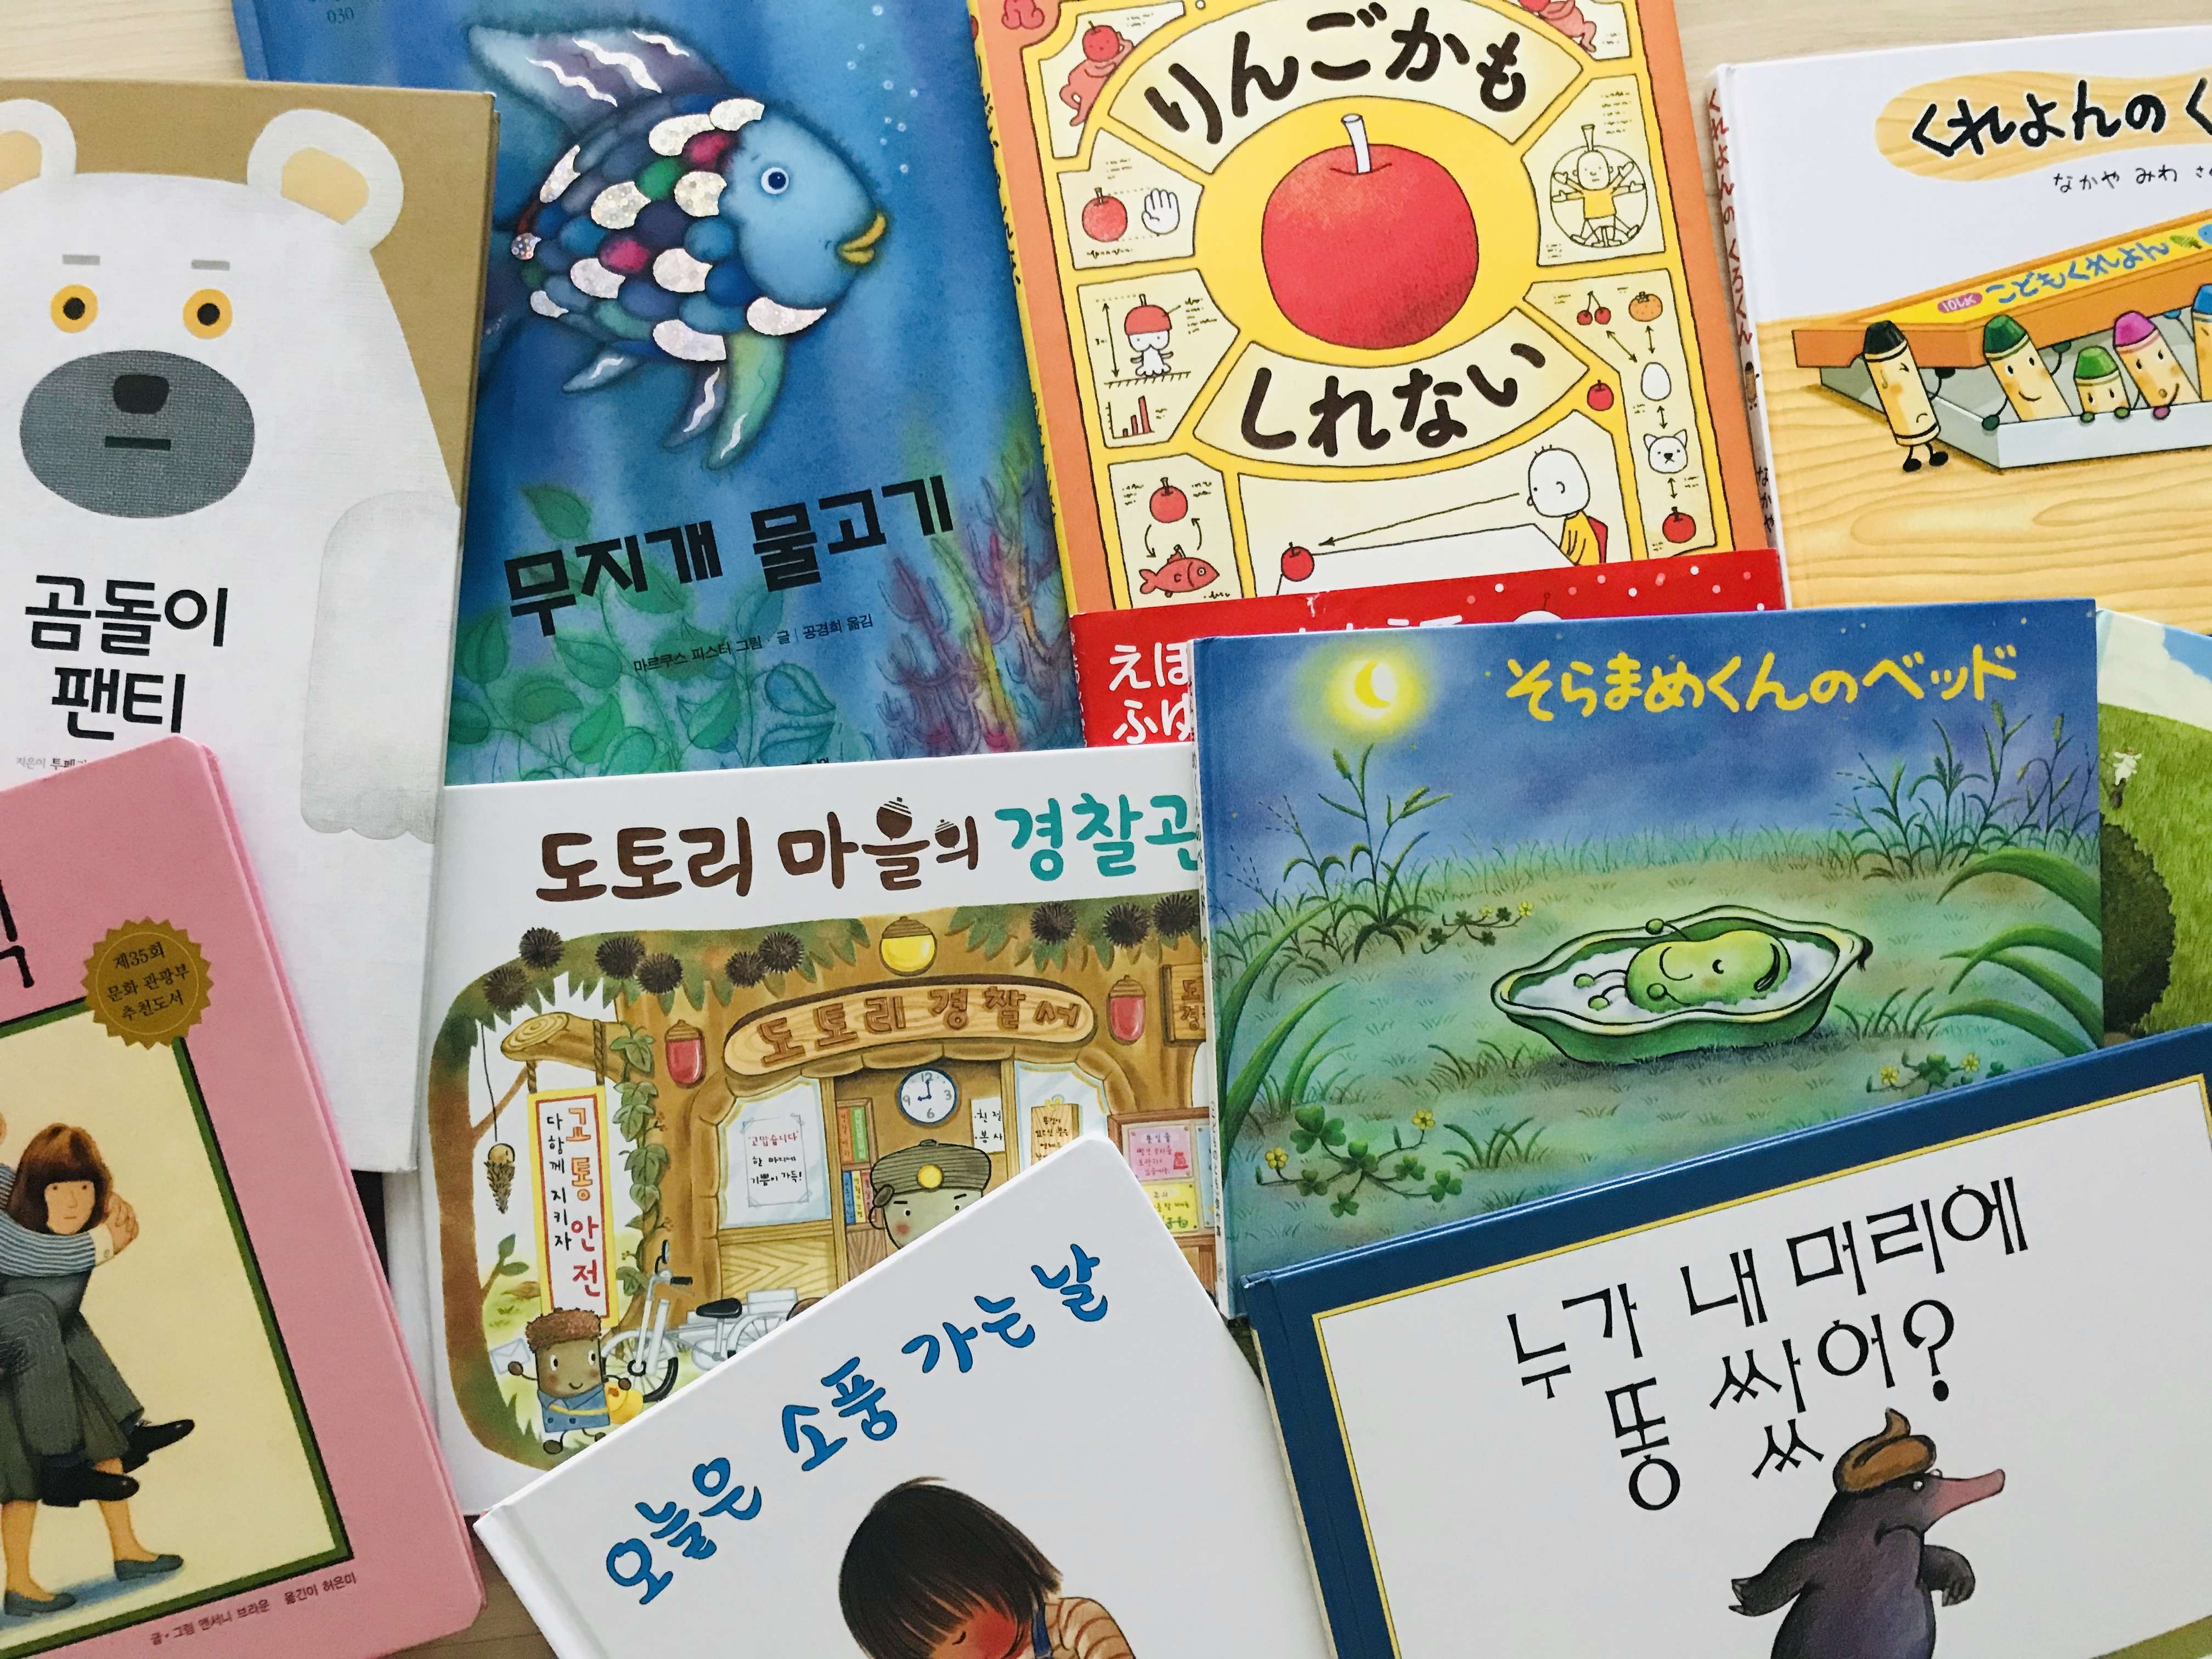 韓国でのバイリンガル子育てで効果的なことと日本語を維持する対策とは Joy Life